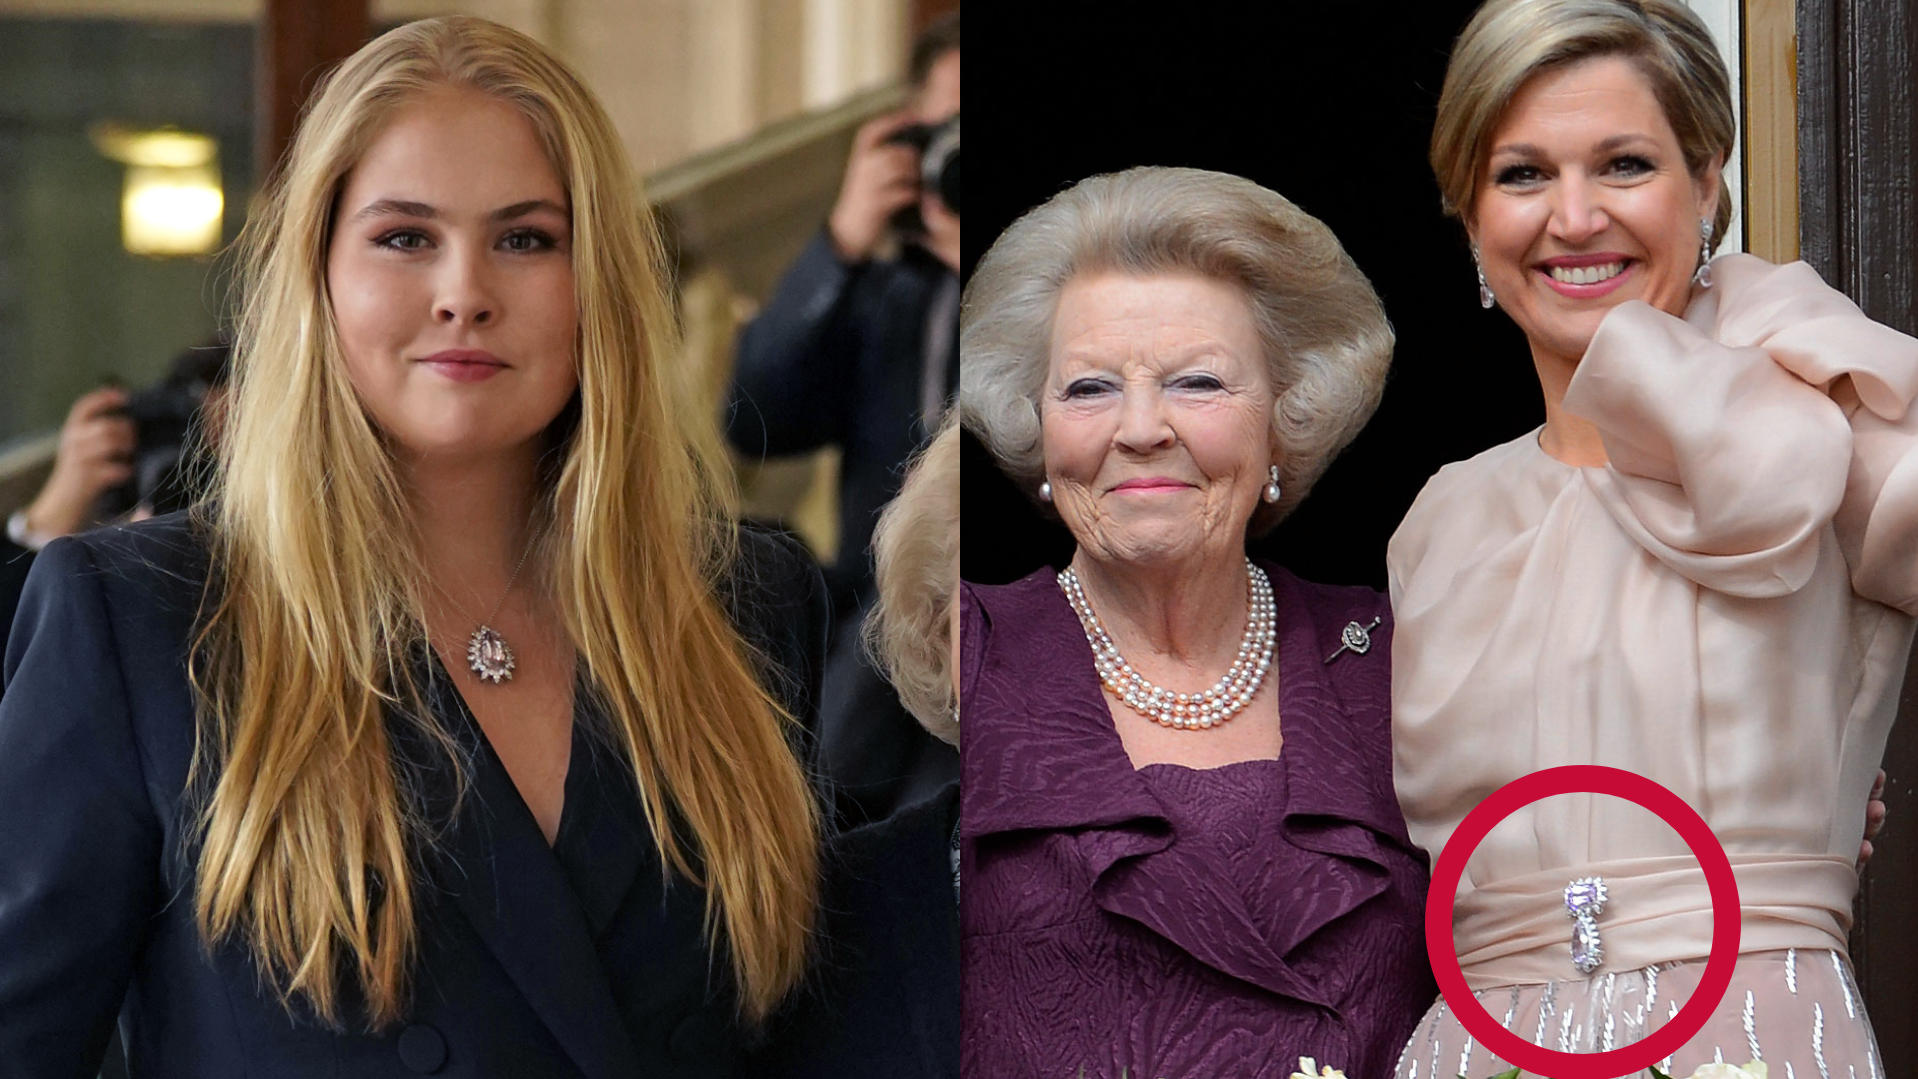 Kronprinzessin Amalia der Niederlande in London sowie Königin Máxima der Niederlande bei der Abdankung der ehemaligen Königin Beatrix im Jahr 2013.